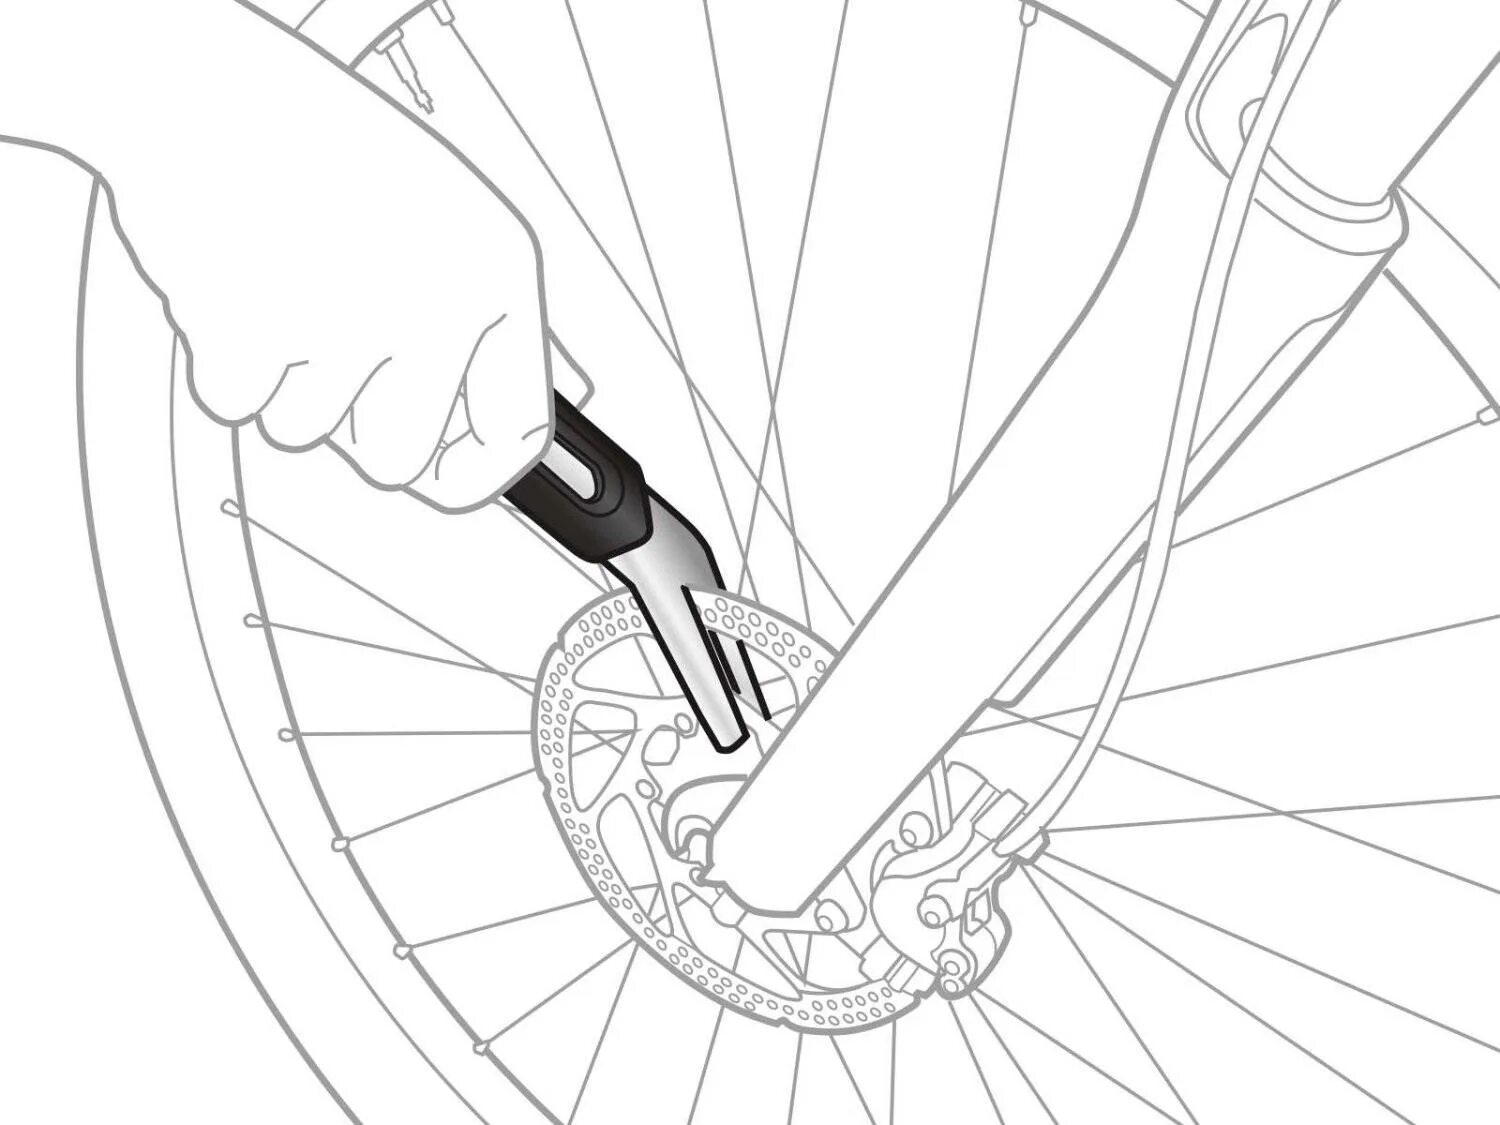 Как выровнять колесо на велосипеде. Topeak приспособления для правки тормозных дисков Rotor Tru. Инструмент для выравнивания ротора велосипедного дискового тормоза. Ключ для правки тормозных дисков велосипеда триал. Инструмент для правки велосипедных тормозных дисков.